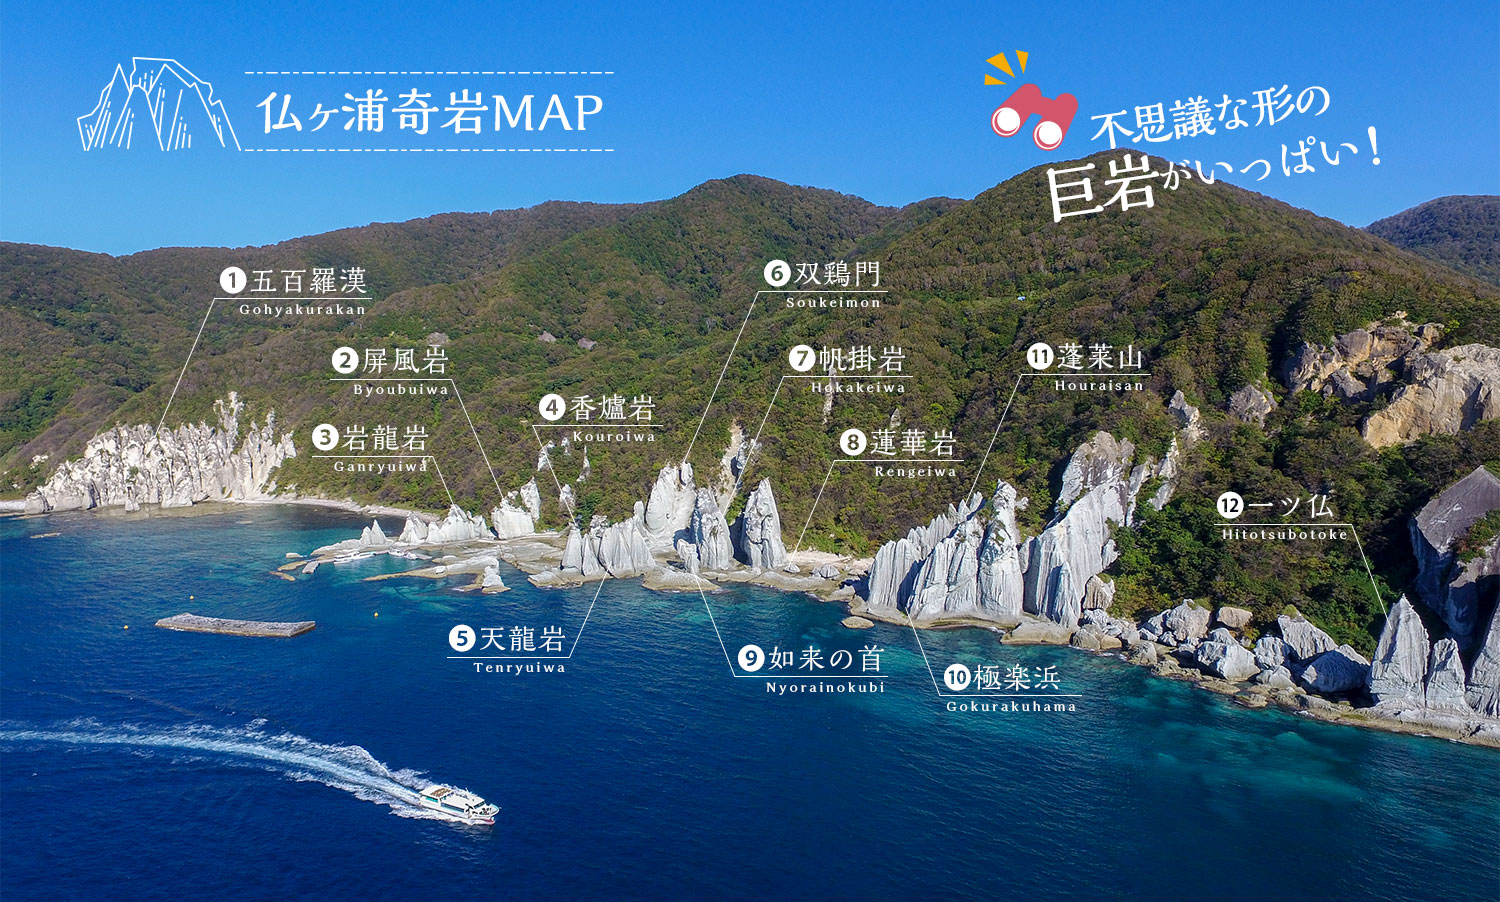 仏ヶ浦奇岩MAP